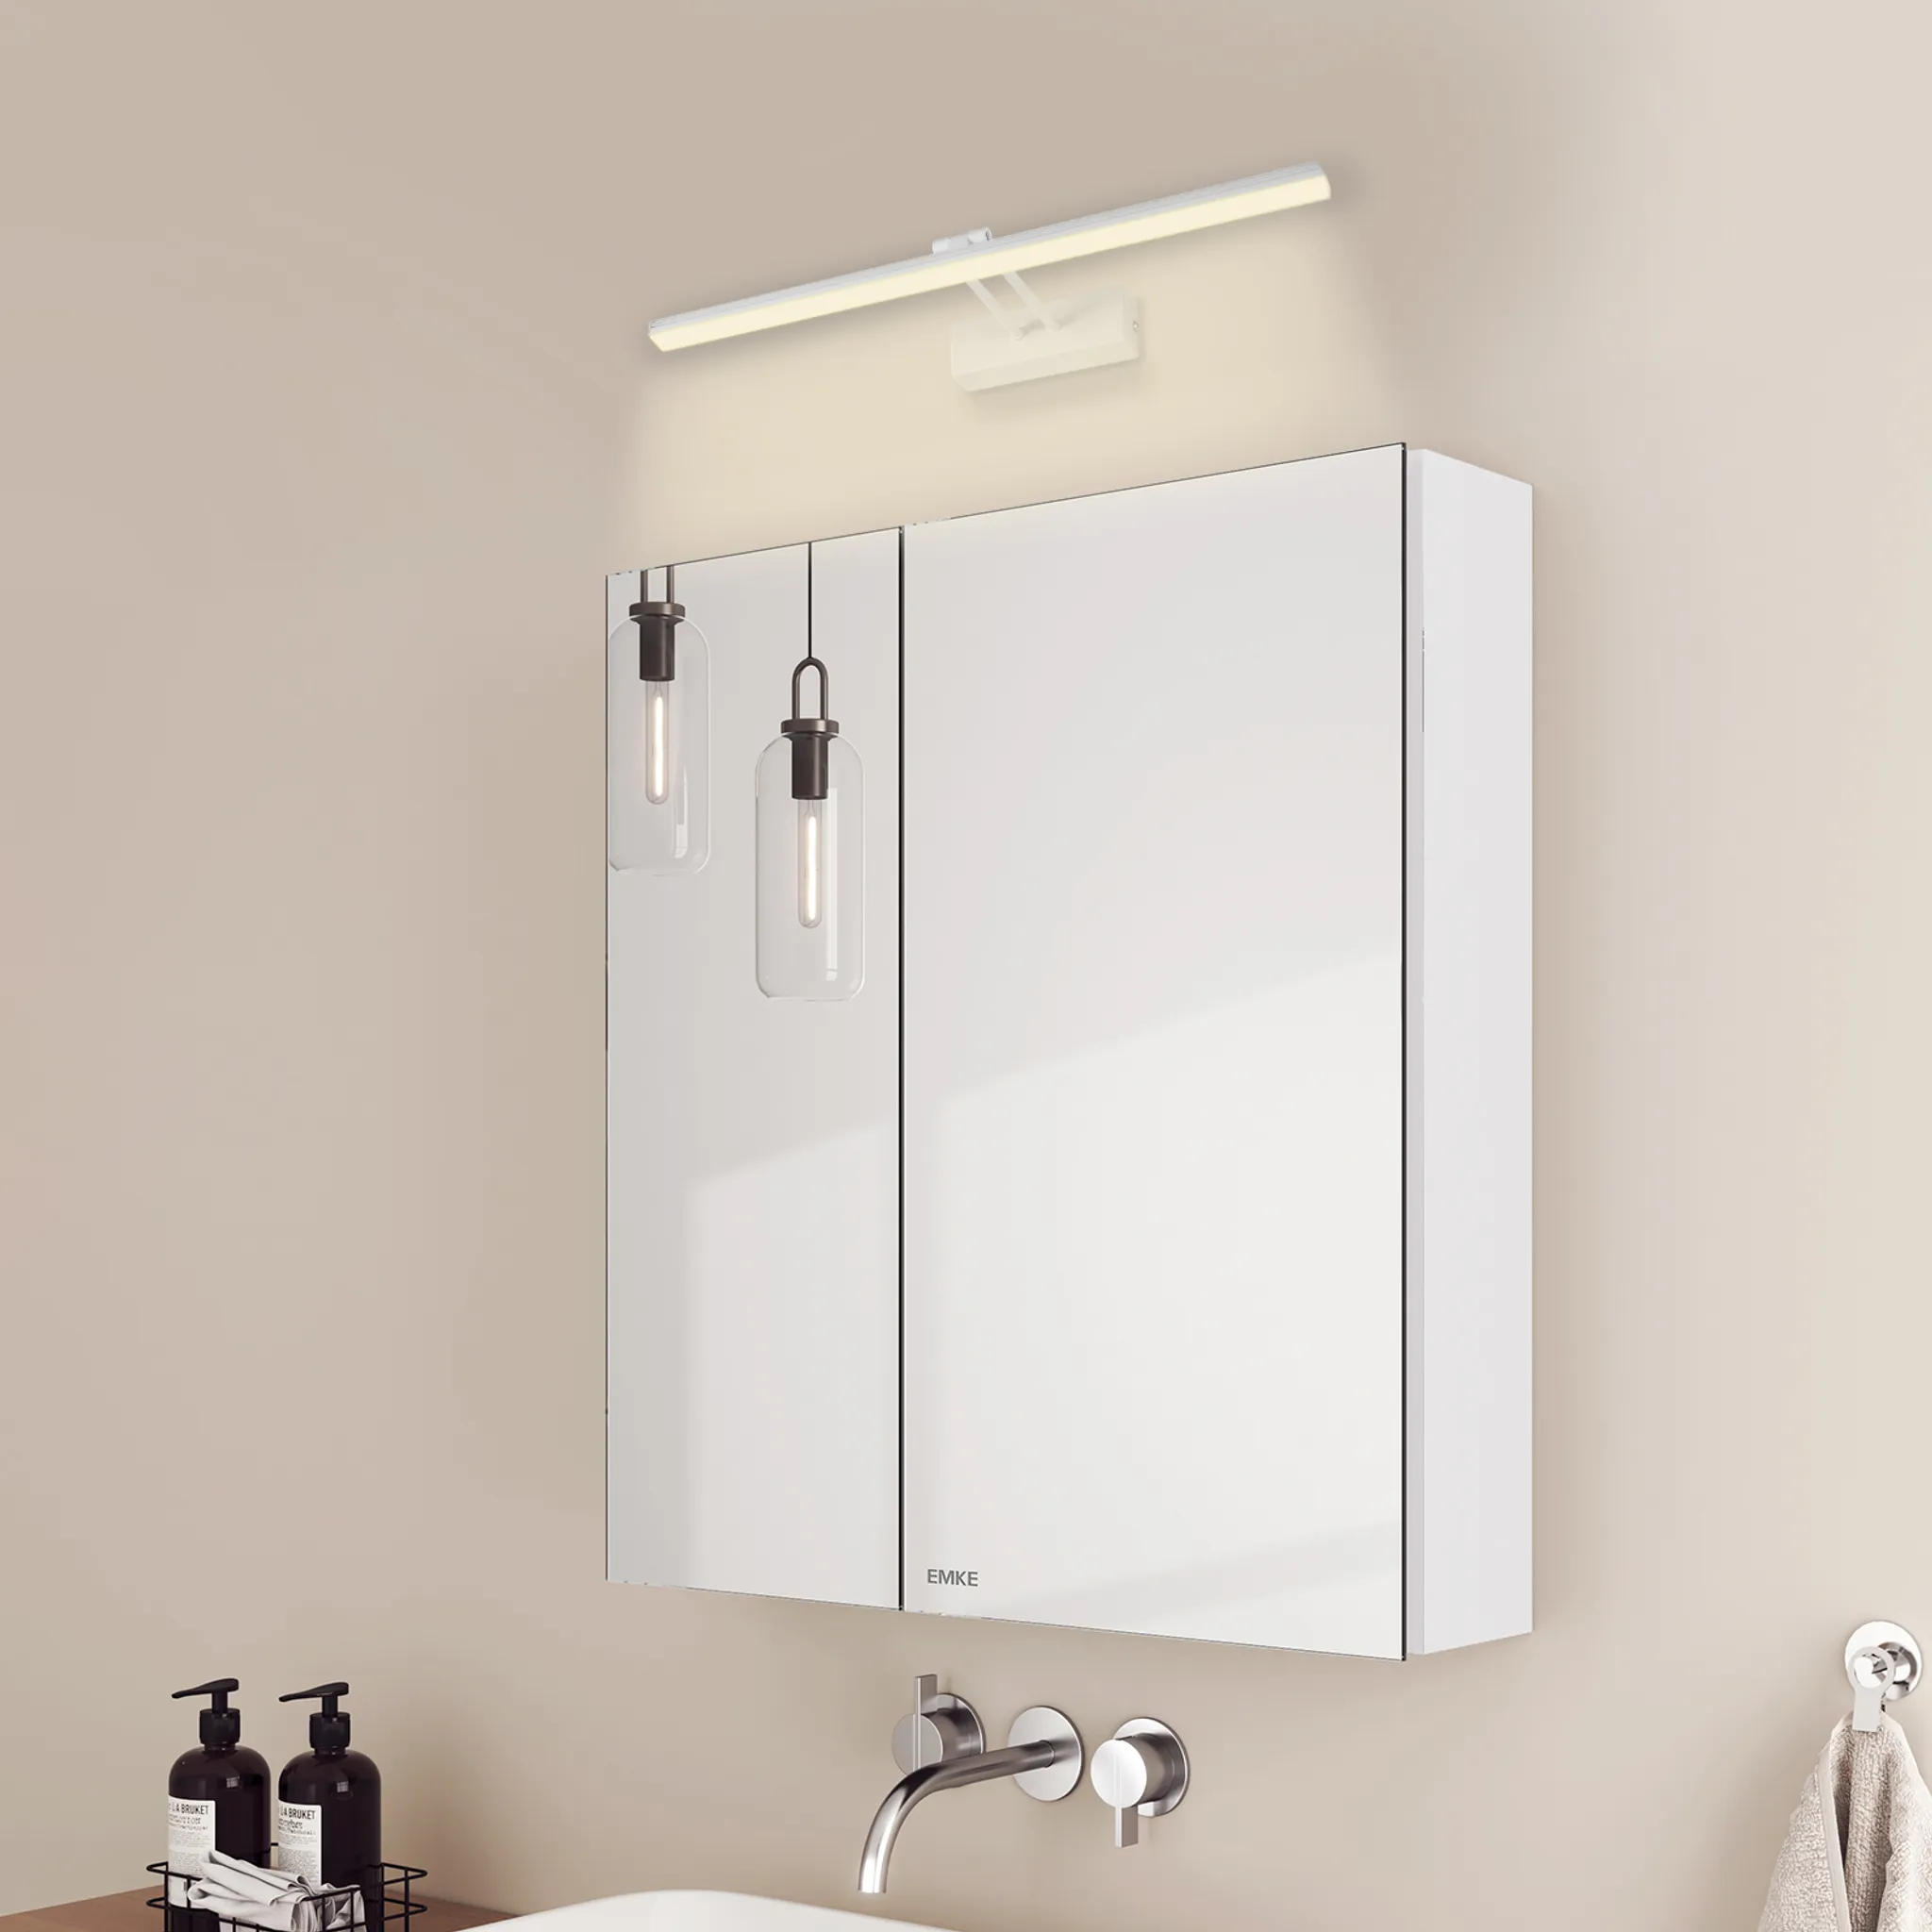 EMKE Spiegelschrank und Spiegellampen,60x65x14.5cm Weiß Weiß 4200k Licht und Neutral Badspiegelschrank Wandleuchten 2 Glasböden